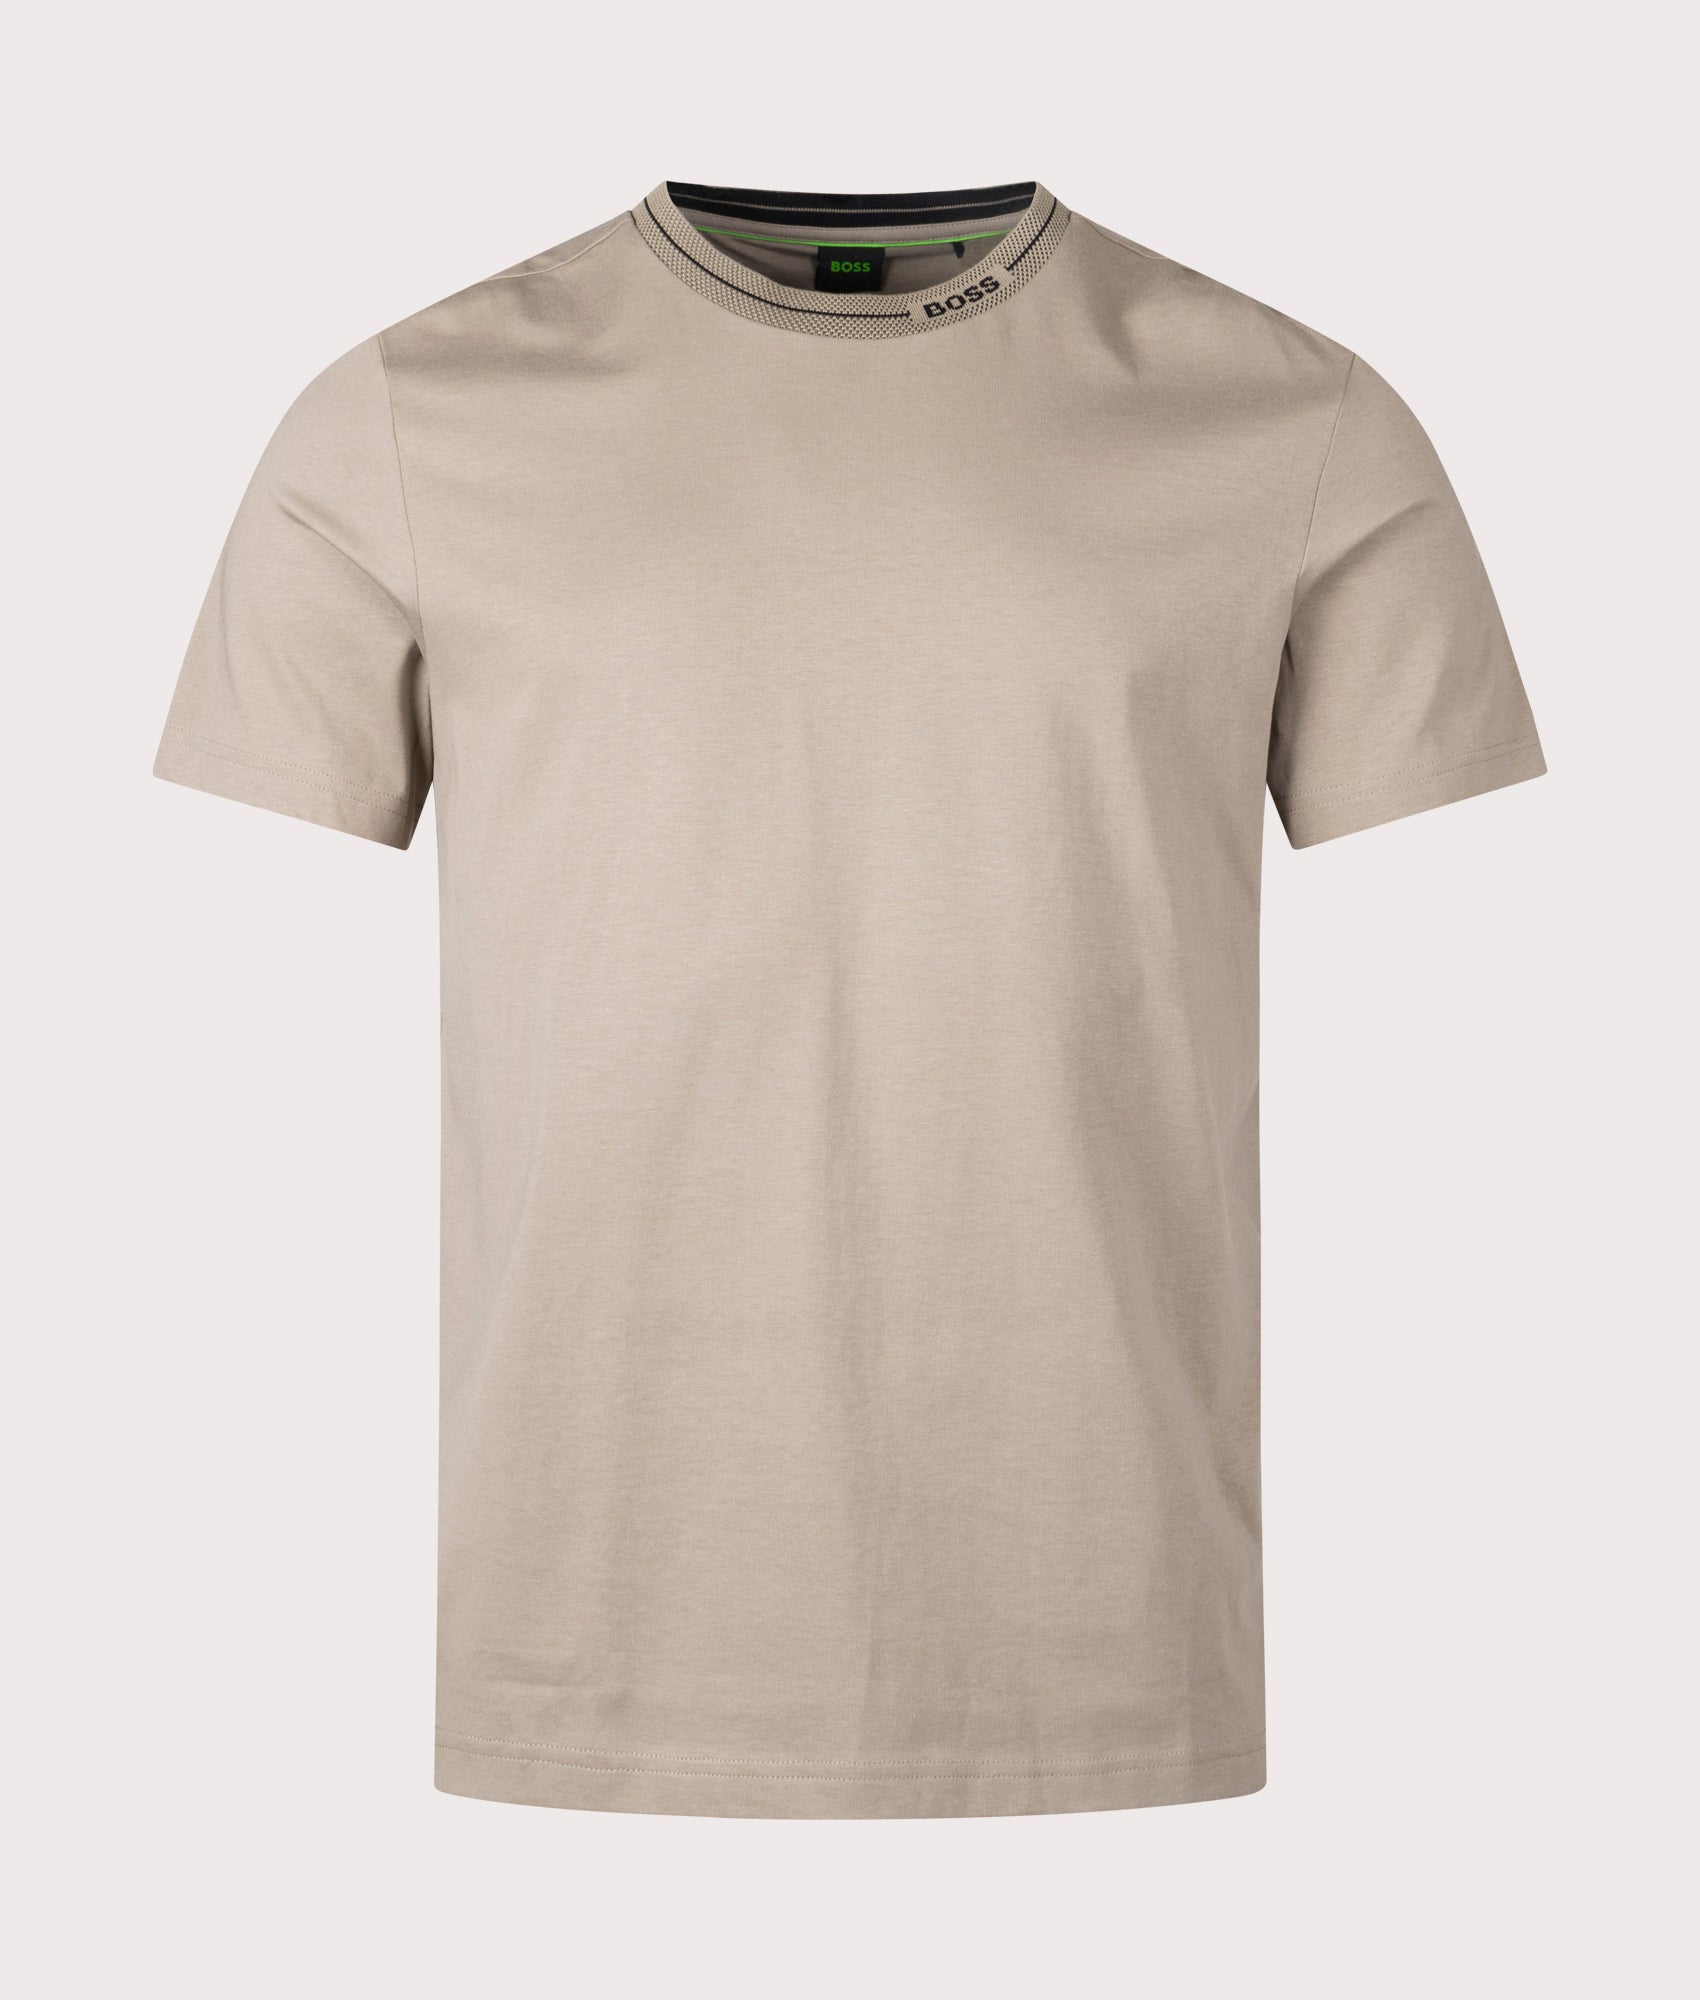 BOSS Mens Tee 11 T-Shirt - Colour: 334 Light/Pastel Green - Size: XXL